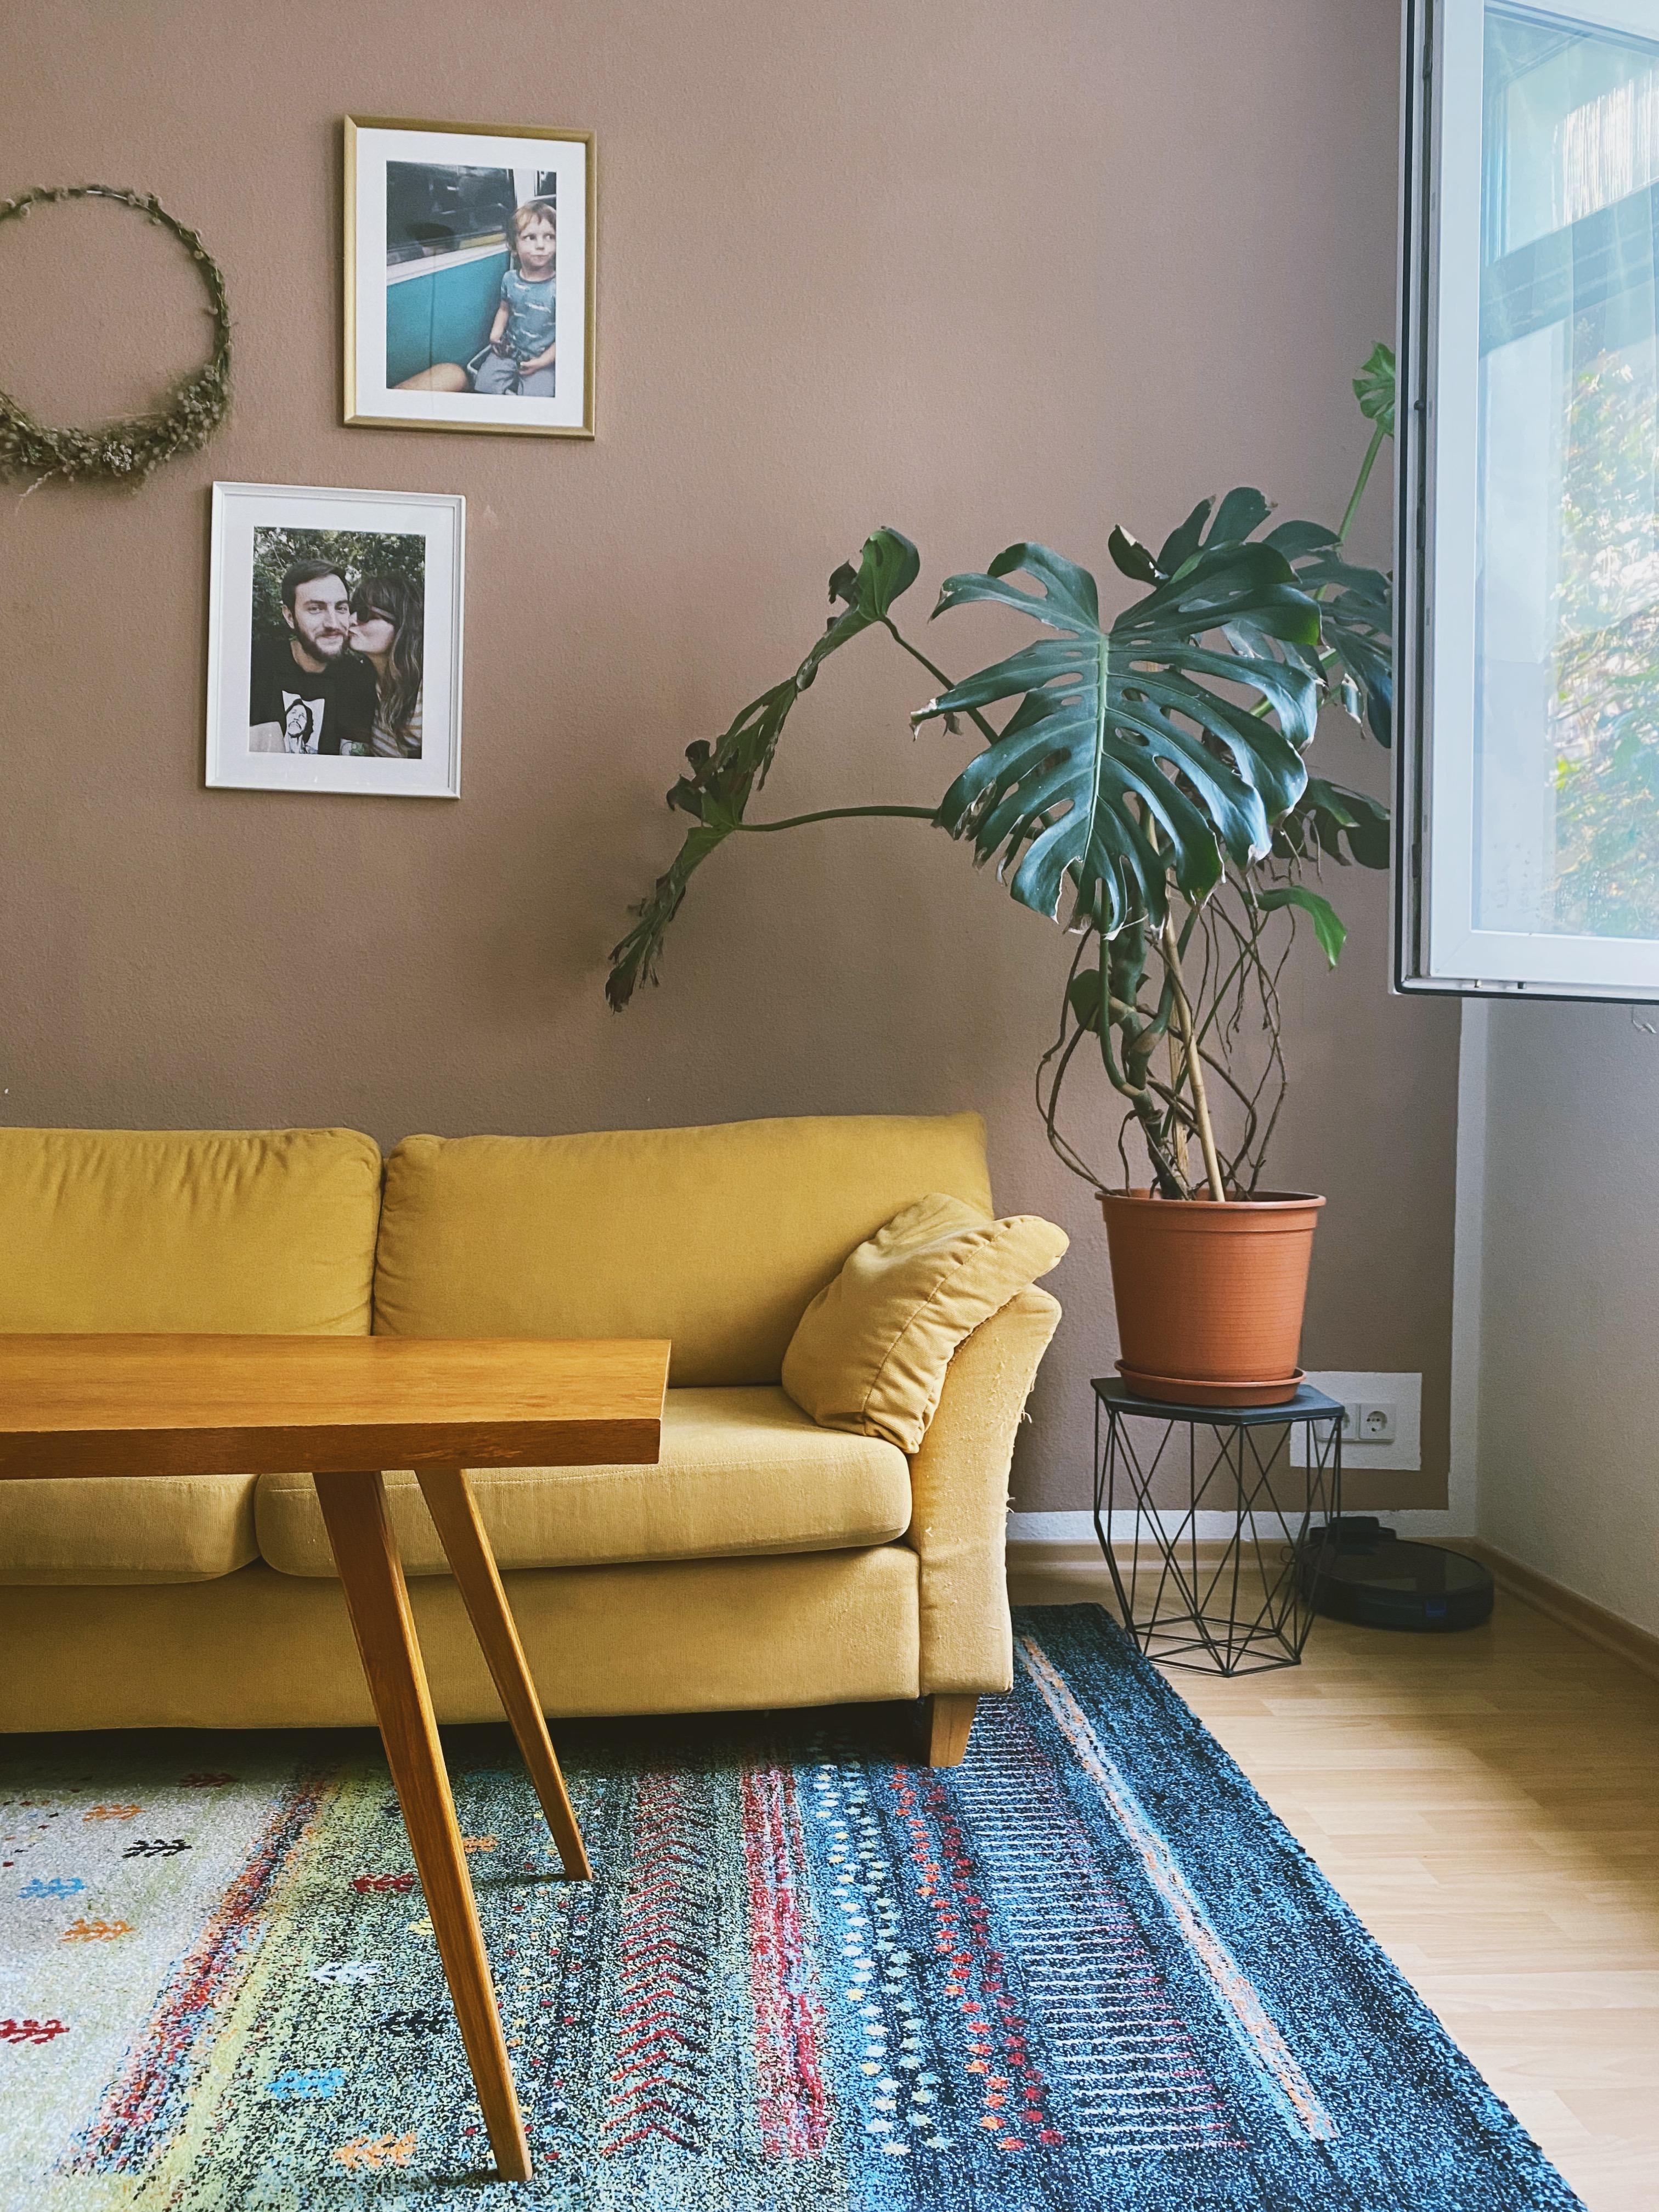 Der eine kurze Moment am Morgen, um frische Luft in die Wohnung zu holen. #livingroom #sofa #monstera #vintage